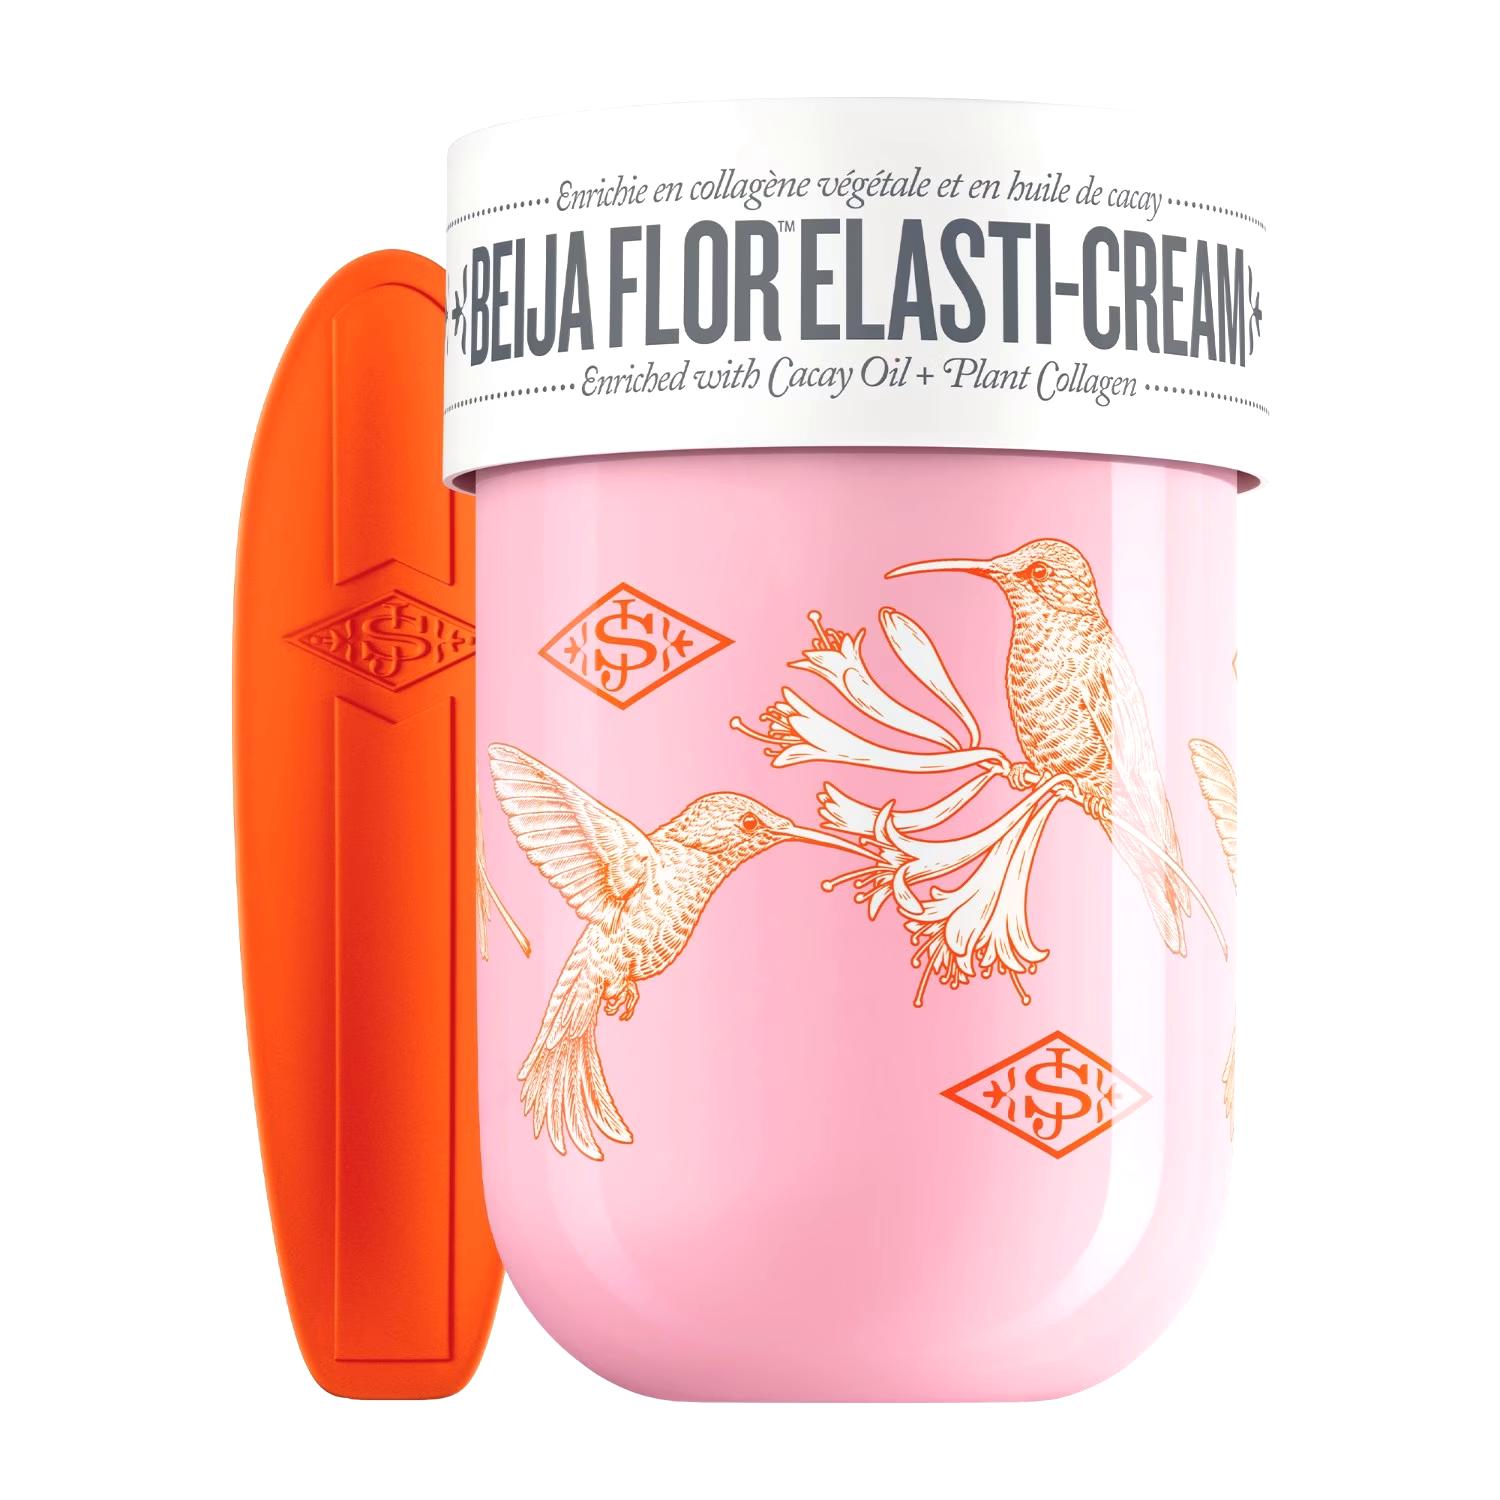 Biggie Biggie Beija Flor ™ Elasti-Cream